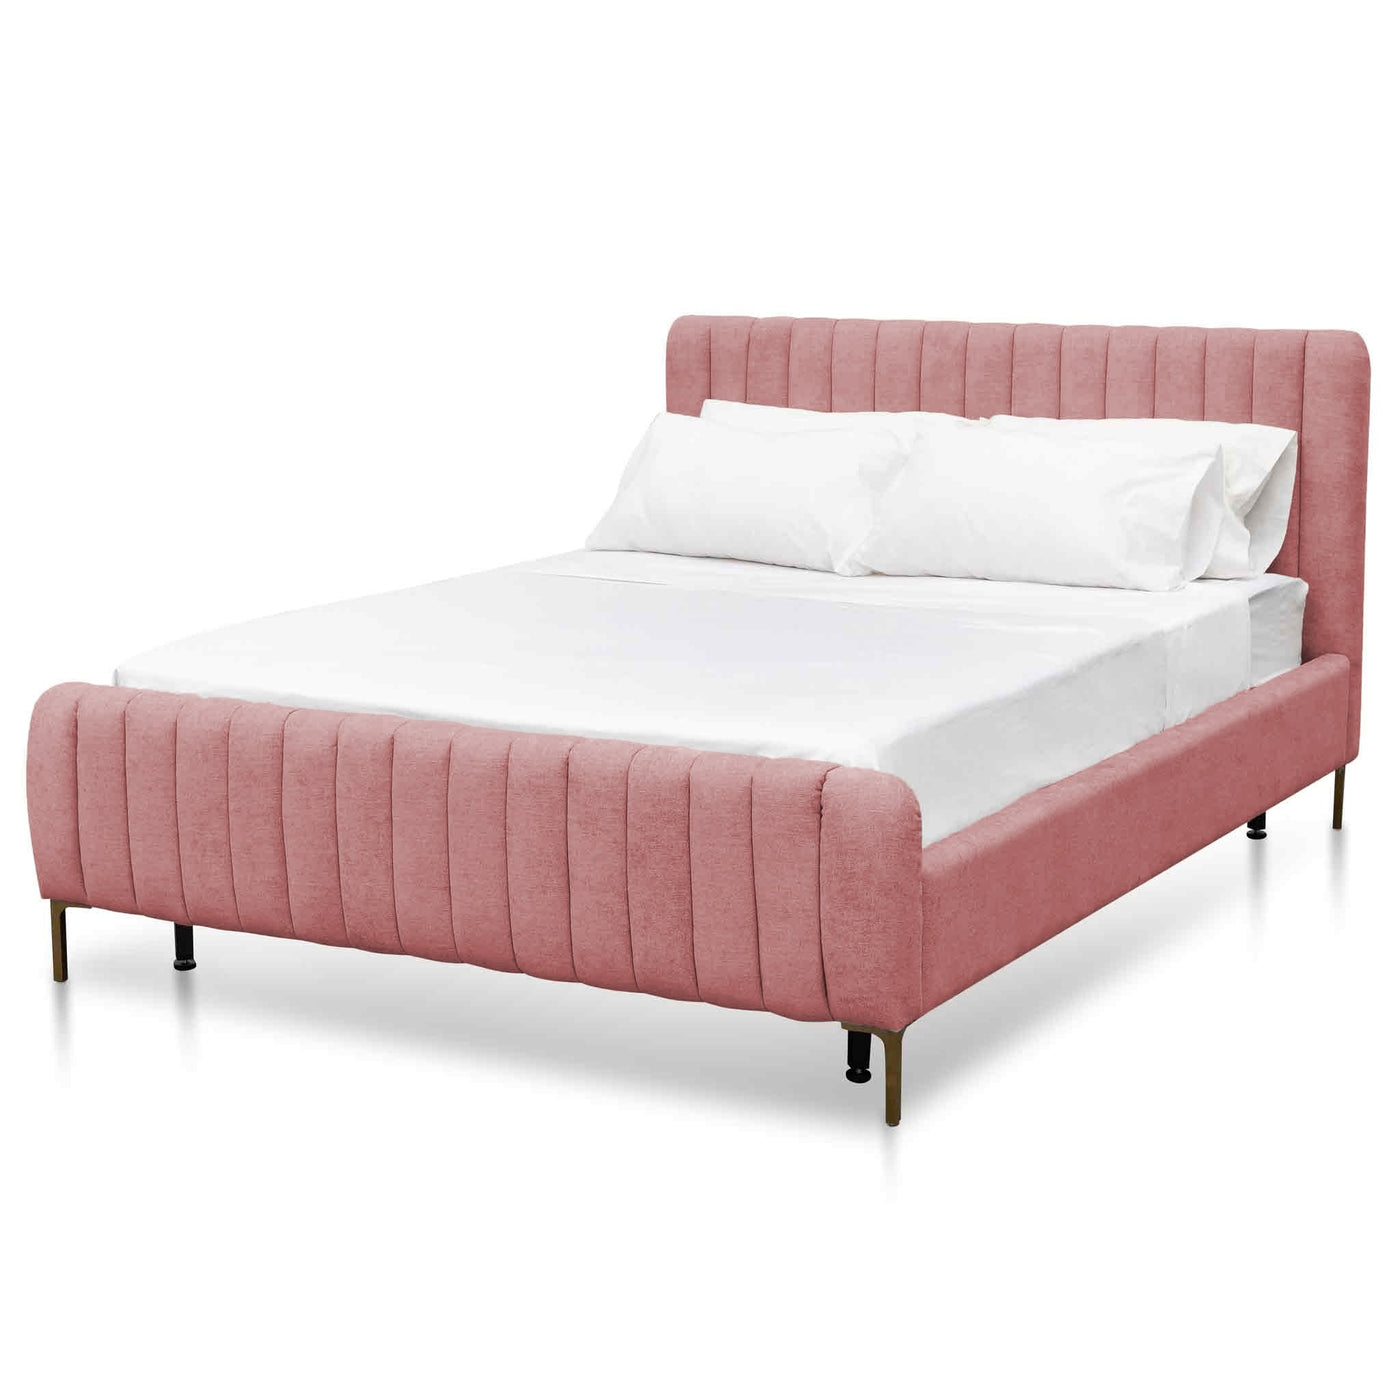 King Sized Bed Frame - Blush Peach Velvet